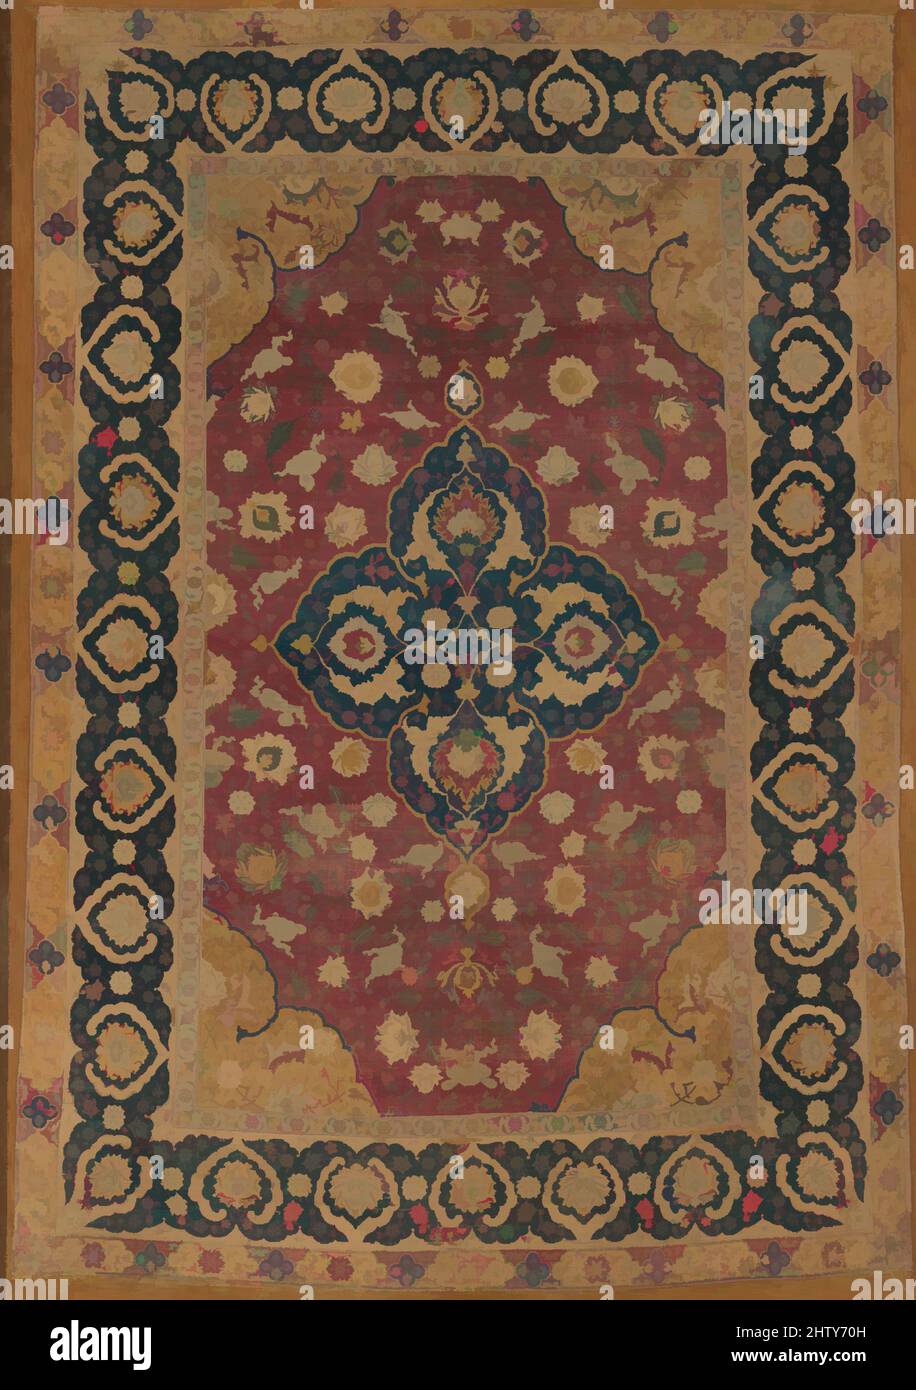 La seta Kashan tappeto. Dimensioni: le dimensioni di montaggio: L. 105 1/2  in. (268 cm) W. 76 1/2 in. (194.3 cm) Peso in mount: 555 lb (251.7 kg).  Data: seconda metà del